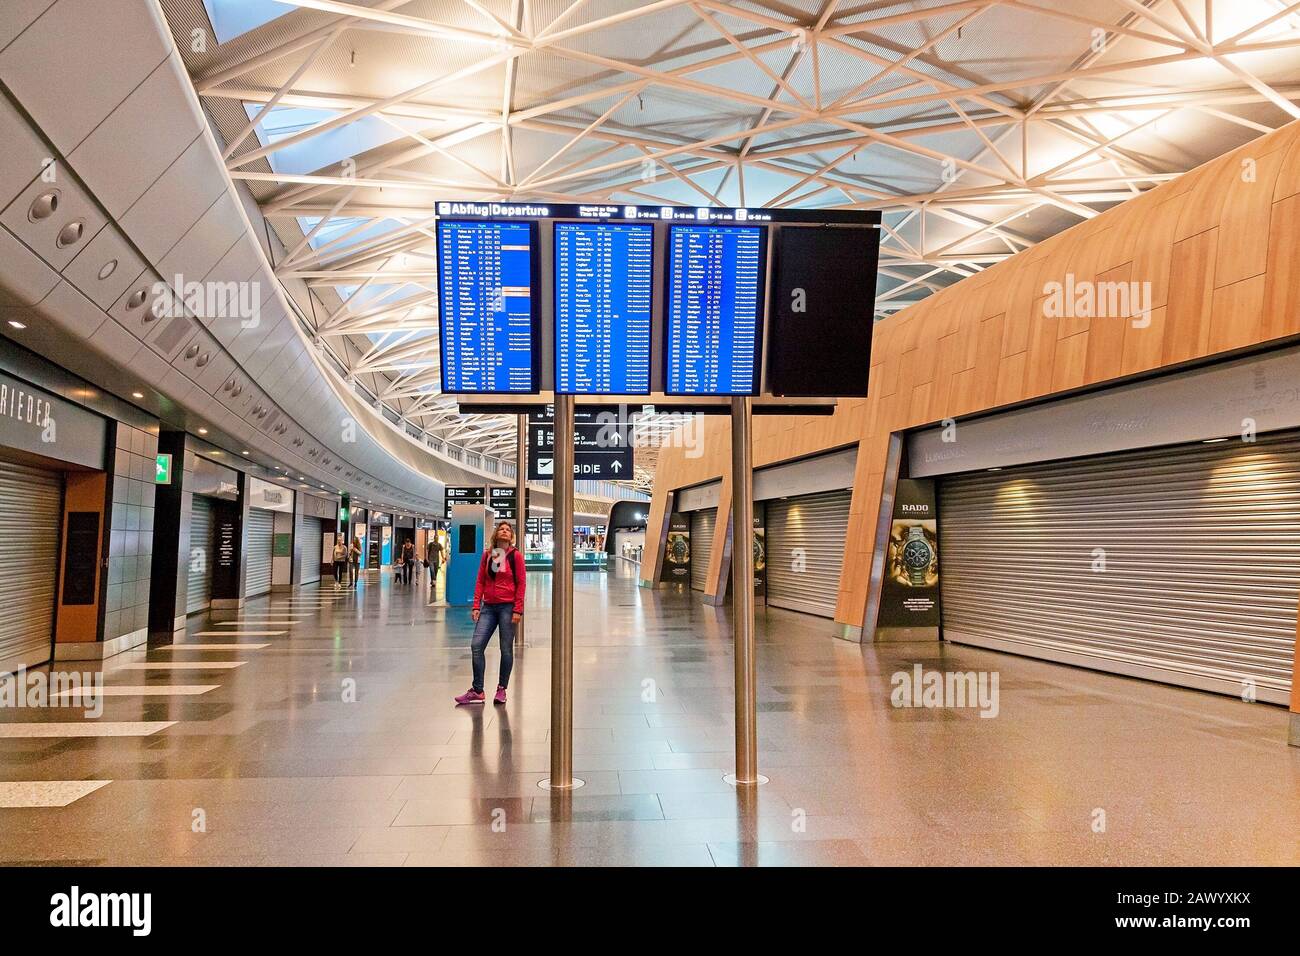 Zurigo, Svizzera - 11 giugno 2017: Area d'attesa dell'aeroporto di Zurigo dopo il check-in, donna che guarda l'orario dei voli Foto Stock